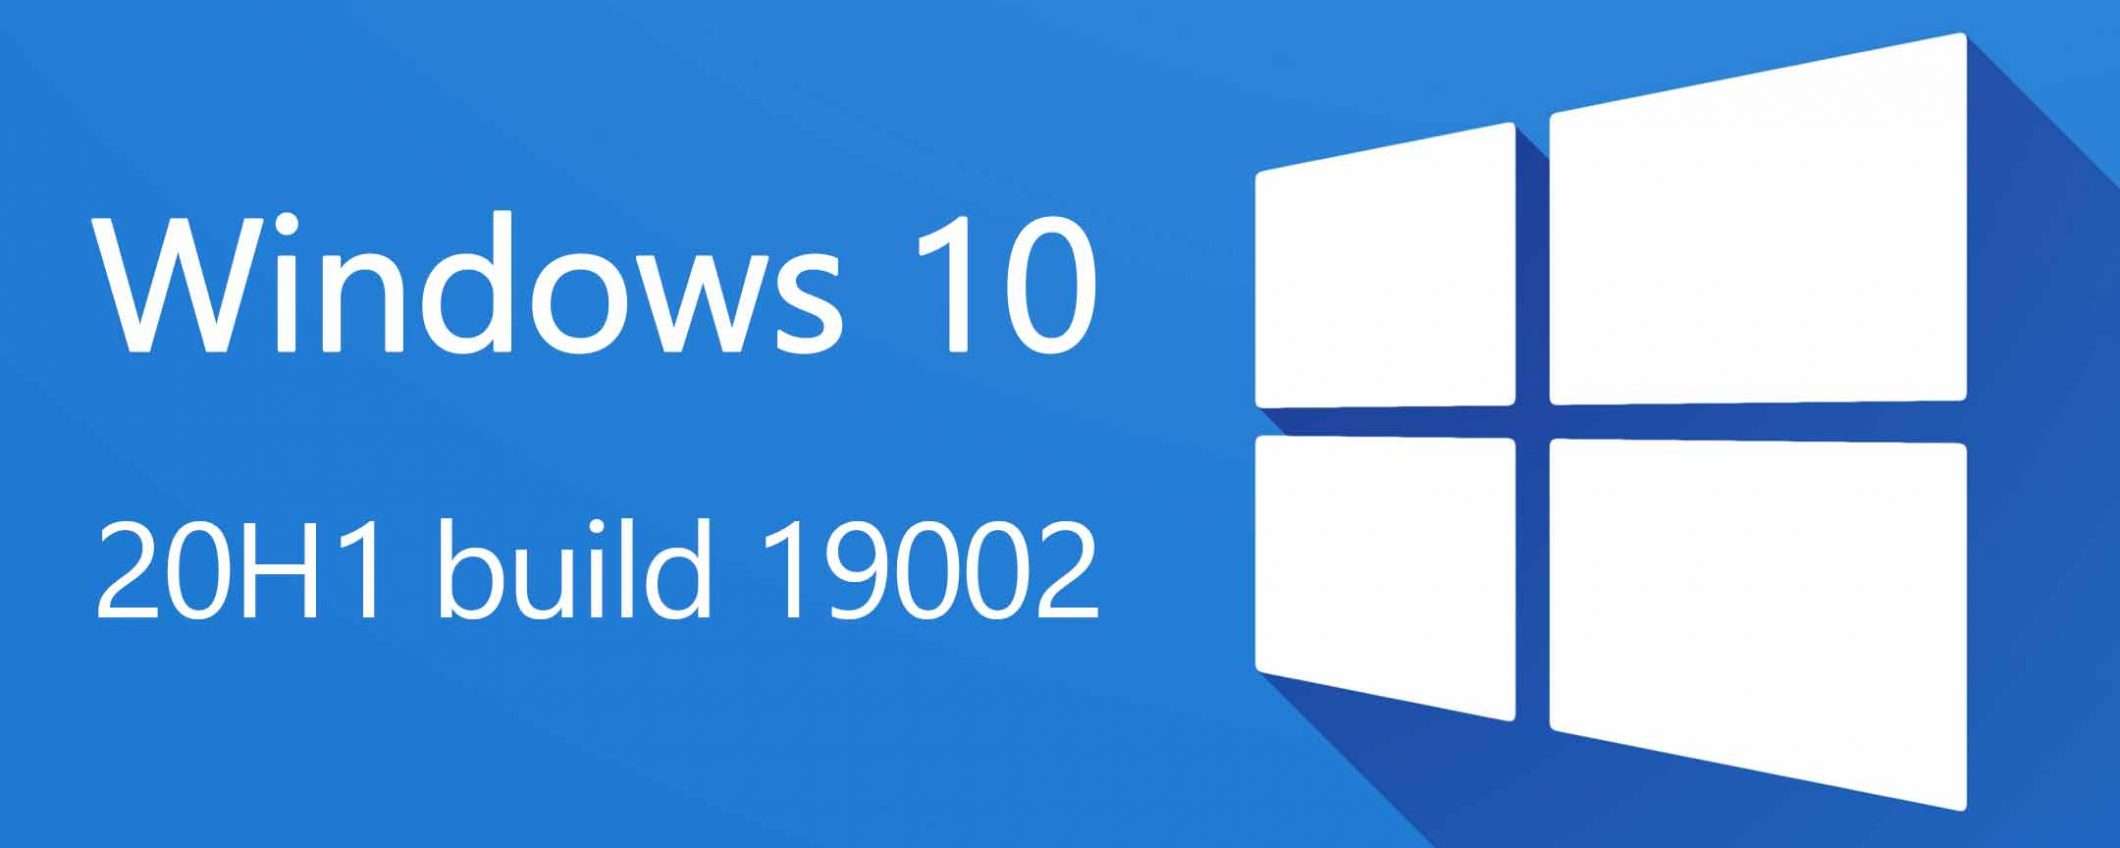 Windows 10 20H1 (build 19002): le novità